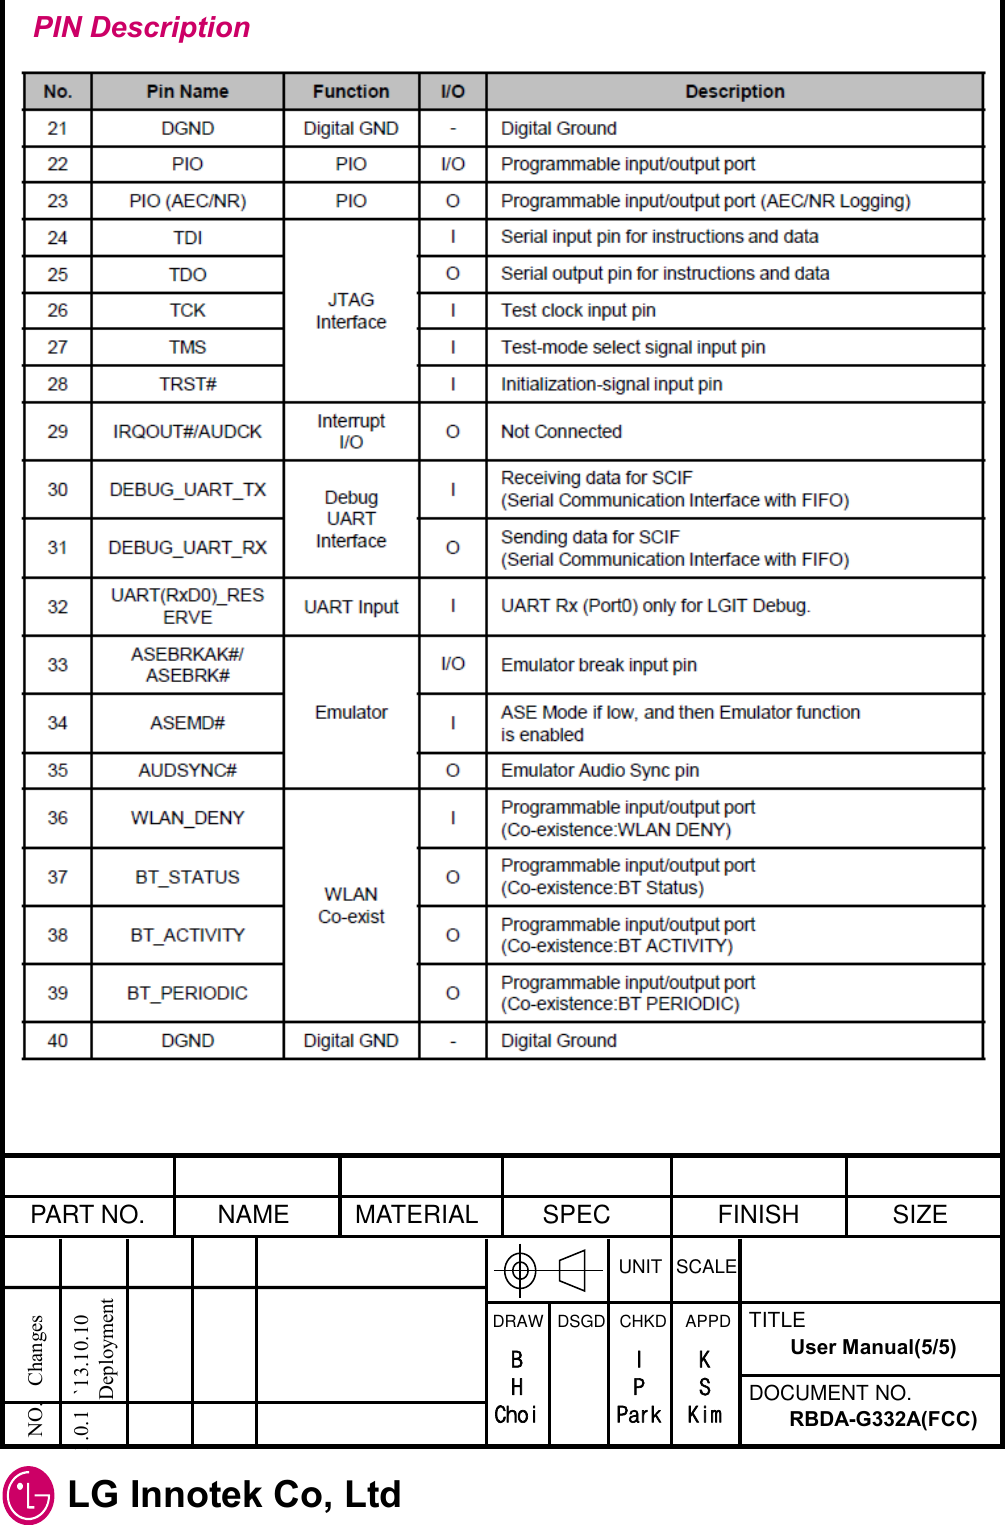  LG Innotek Co, Ltd  PART NO.  NAME  MATERIAL  SPEC  FINISH  SIZE UNIT  SCALE DRAW   DSGD   CHKD    APPD  TITLE DOCUMENT NO. NO.   Changes   1.0.1   `13.10.10  Deployment RBDA-G332A(FCC) User Manual(5/5) B H Choi I P Park K S Kim PIN Description 